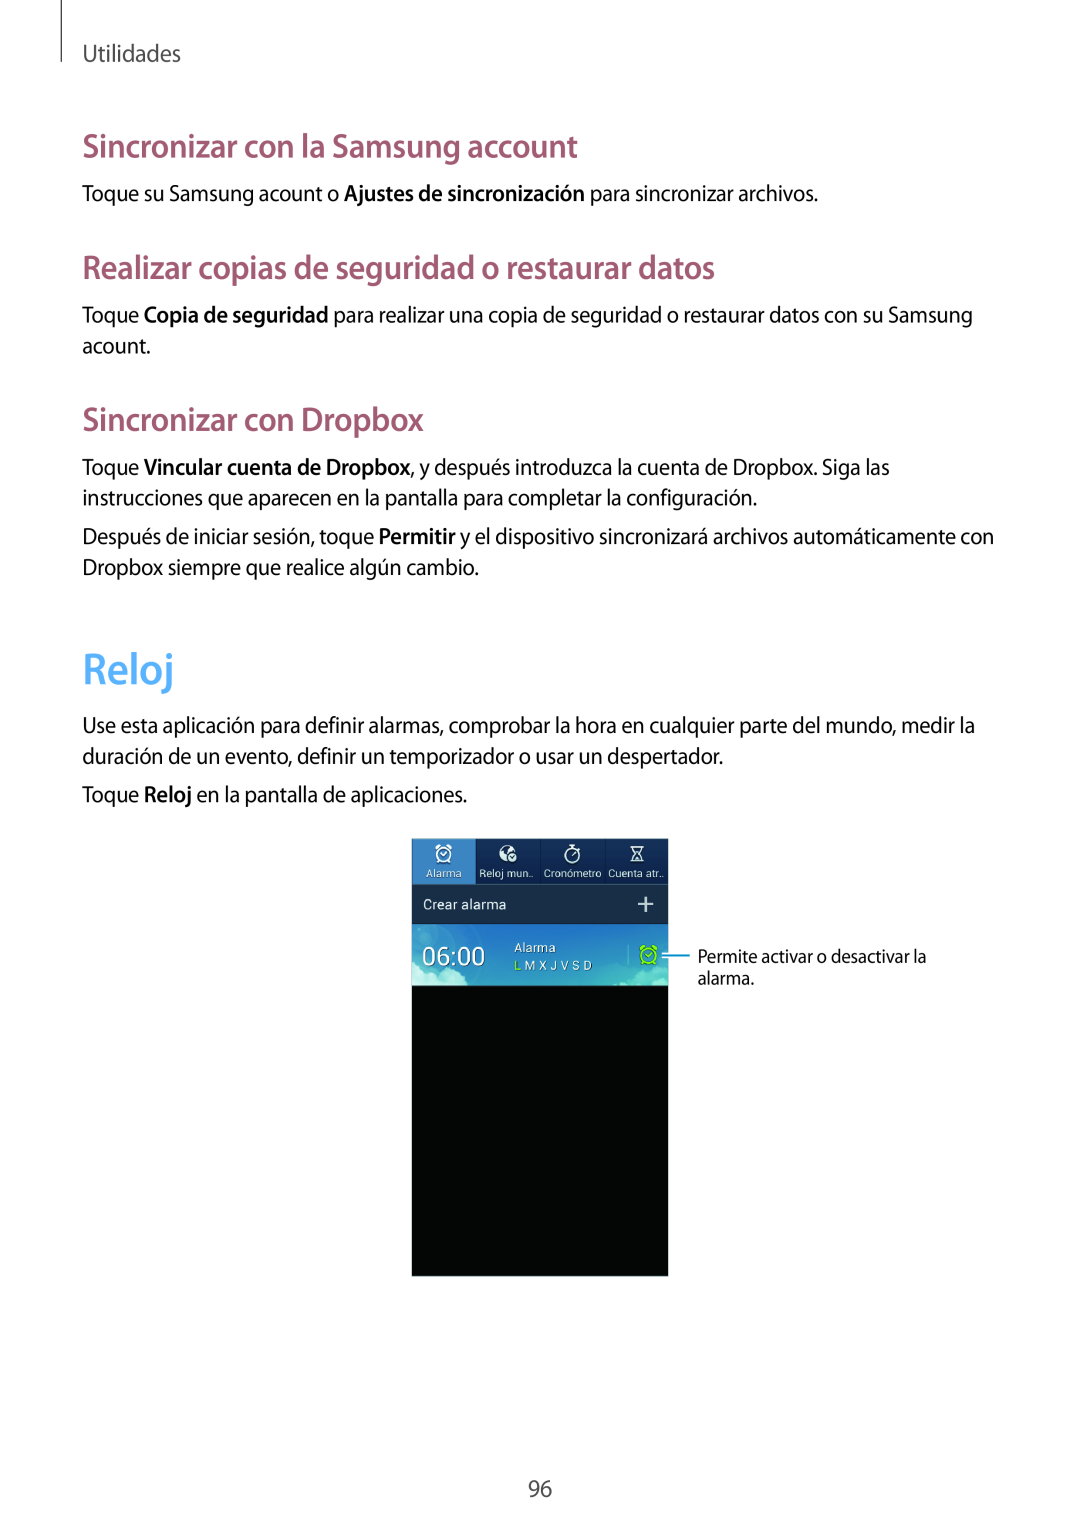 Samsung GT-I9195ZKATPH manual Reloj, Sincronizar con la Samsung account, Realizar copias de seguridad o restaurar datos 